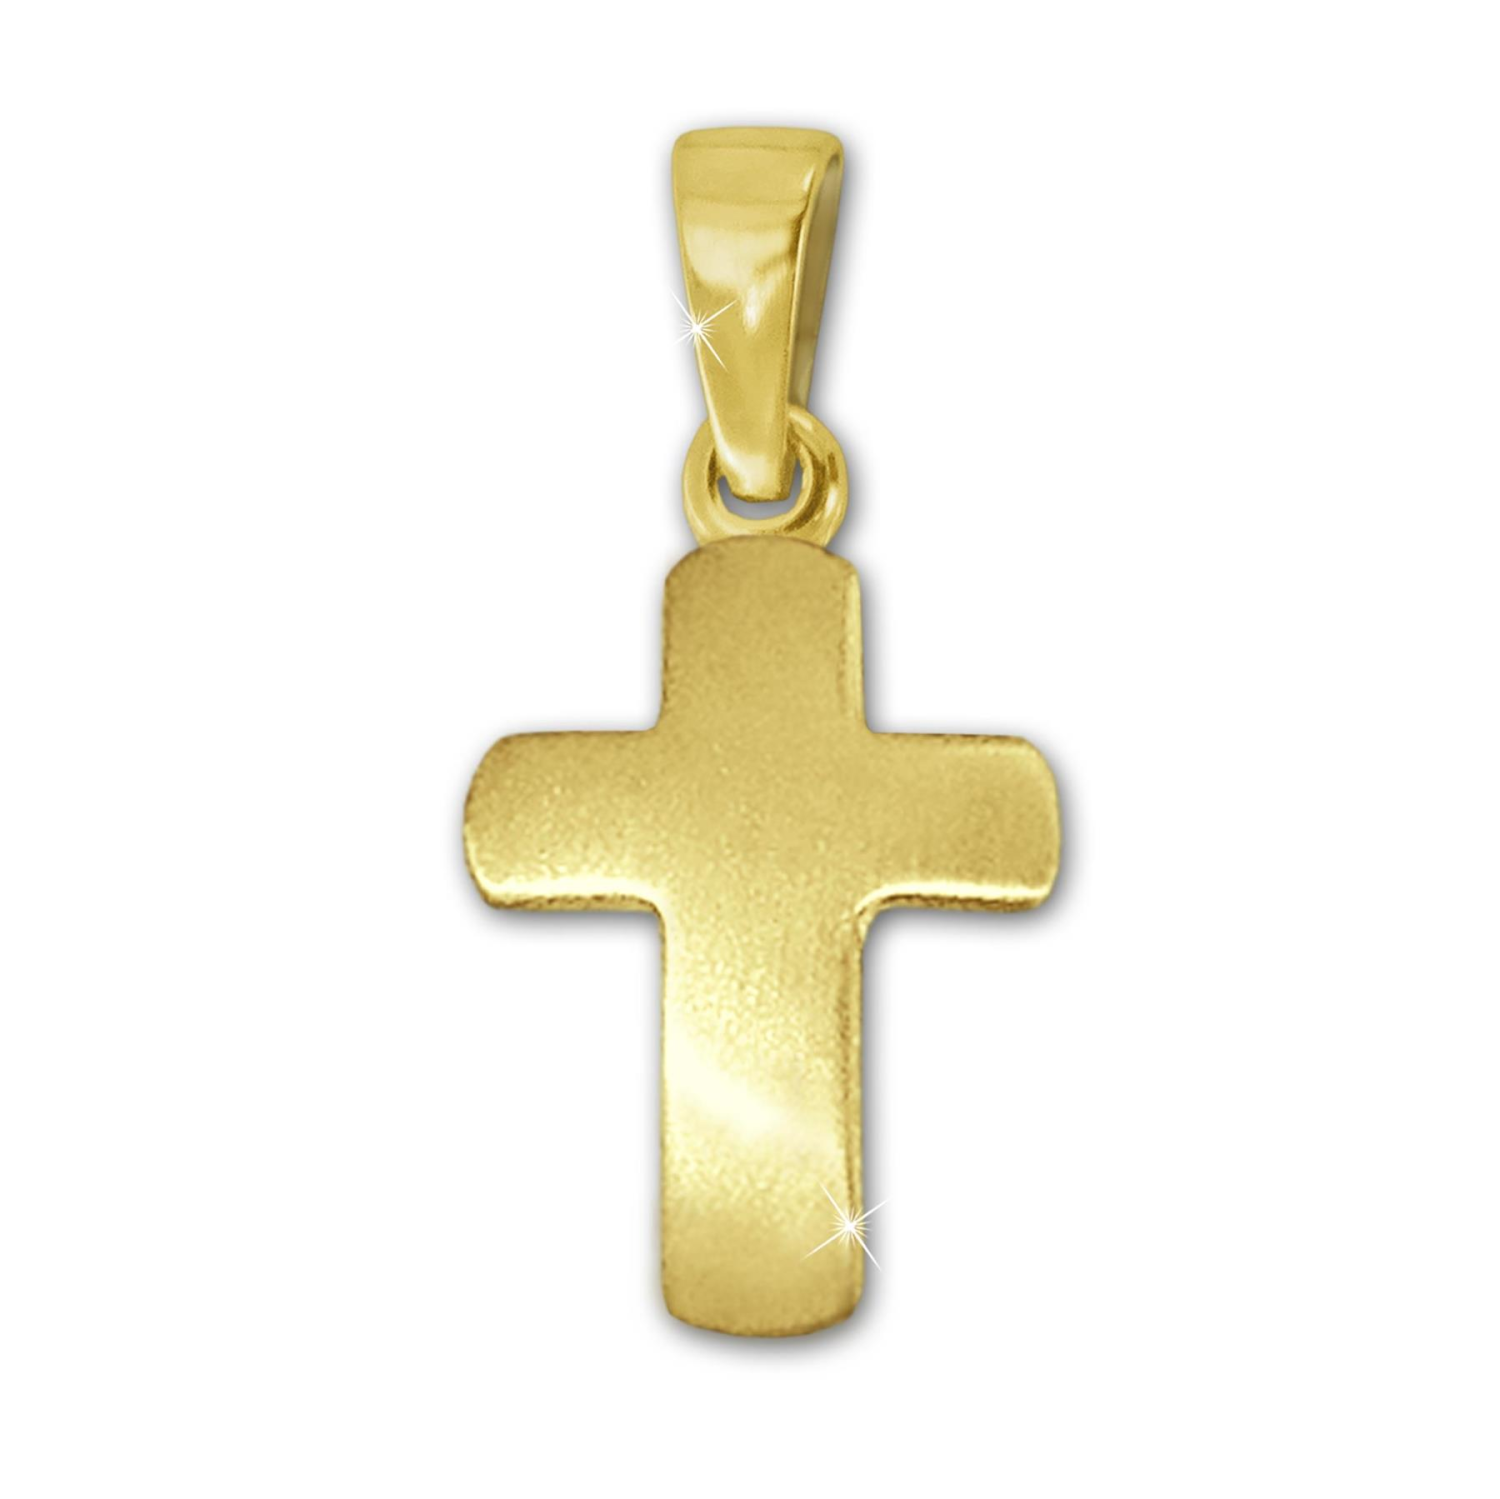 Goldener Mini Anhänger keines schlichtes Kreuz 12 mm seidenmatt leicht gewölbt 333 GOLD 8 KARAT